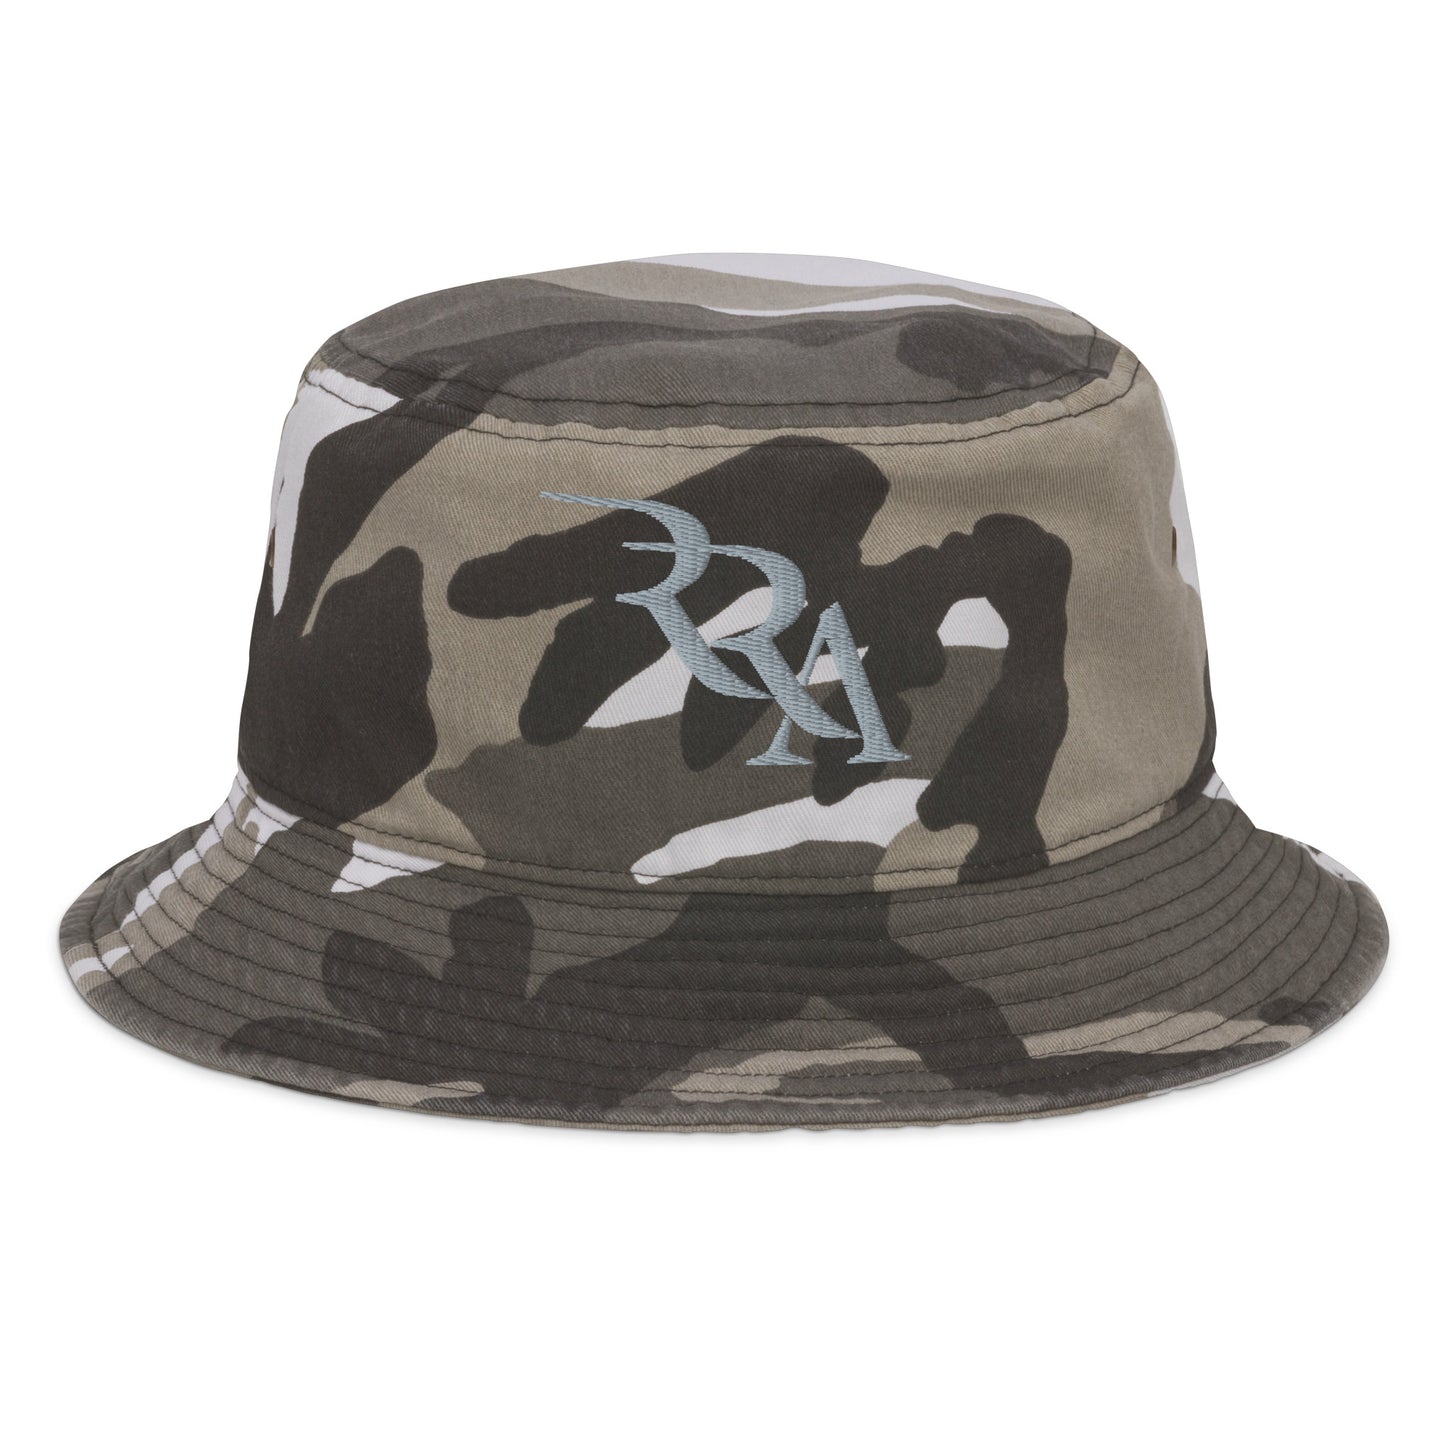 RRA - Silver Fashion bucket hat